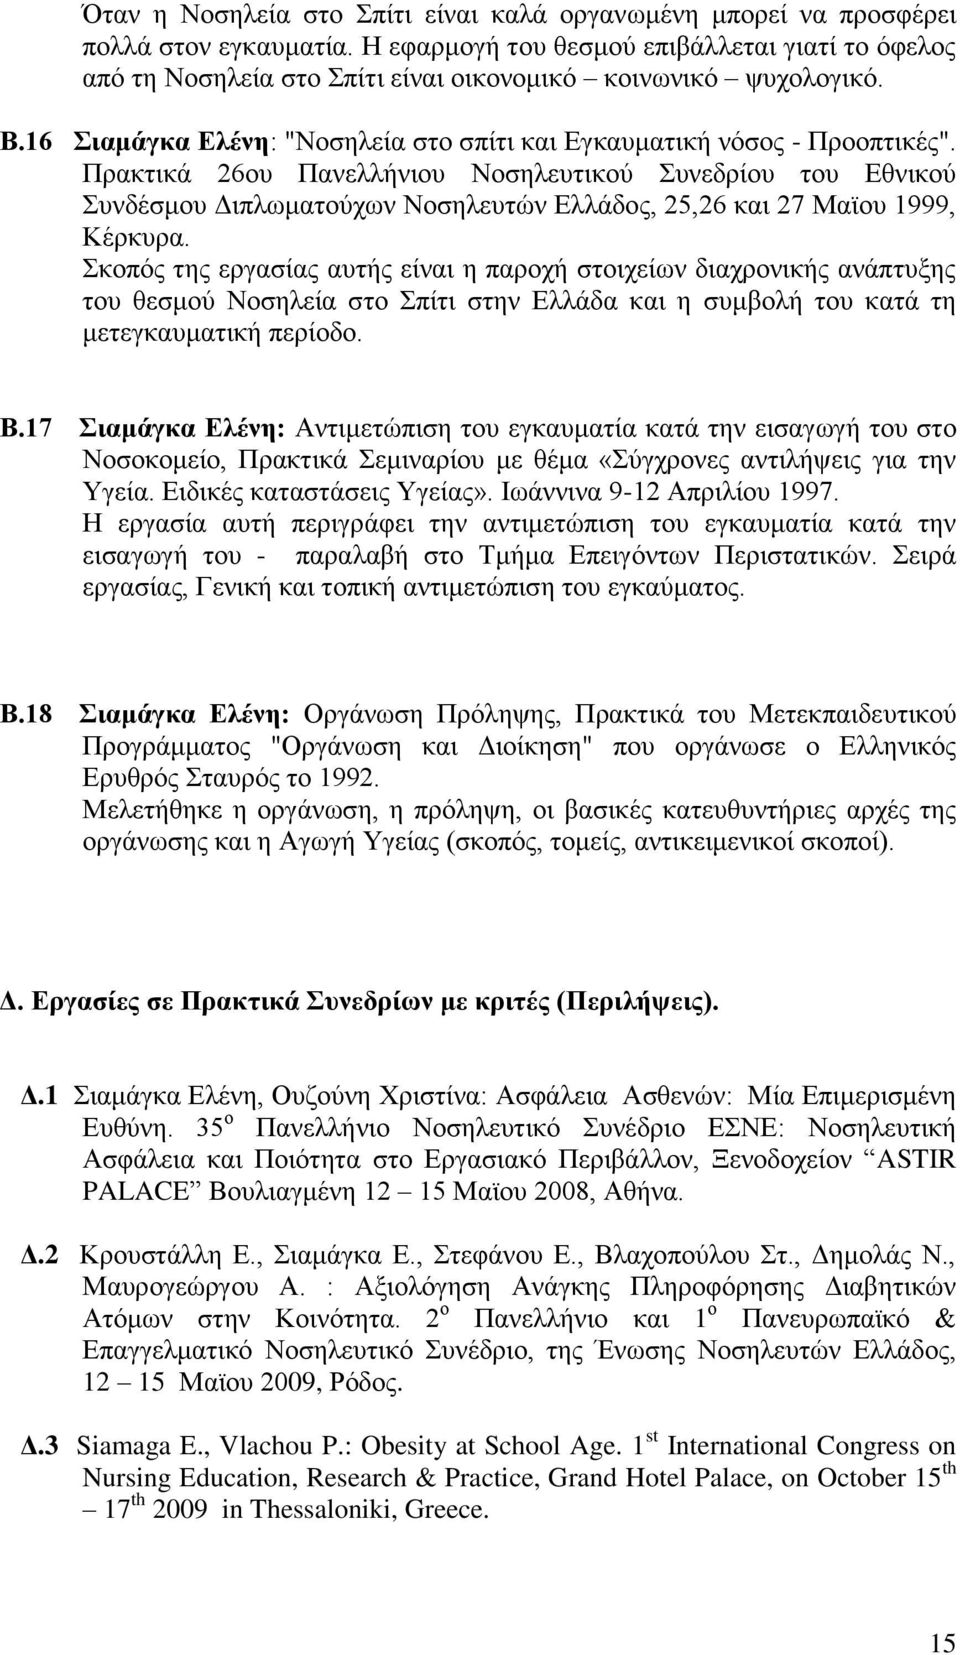 Πρακτικά 26ου Πανελλήνιου Νοσηλευτικού Συνεδρίου του Εθνικού Συνδέσμου Διπλωματούχων Νοσηλευτών Ελλάδος, 25,26 και 27 Mαϊου 1999, Κέρκυρα.